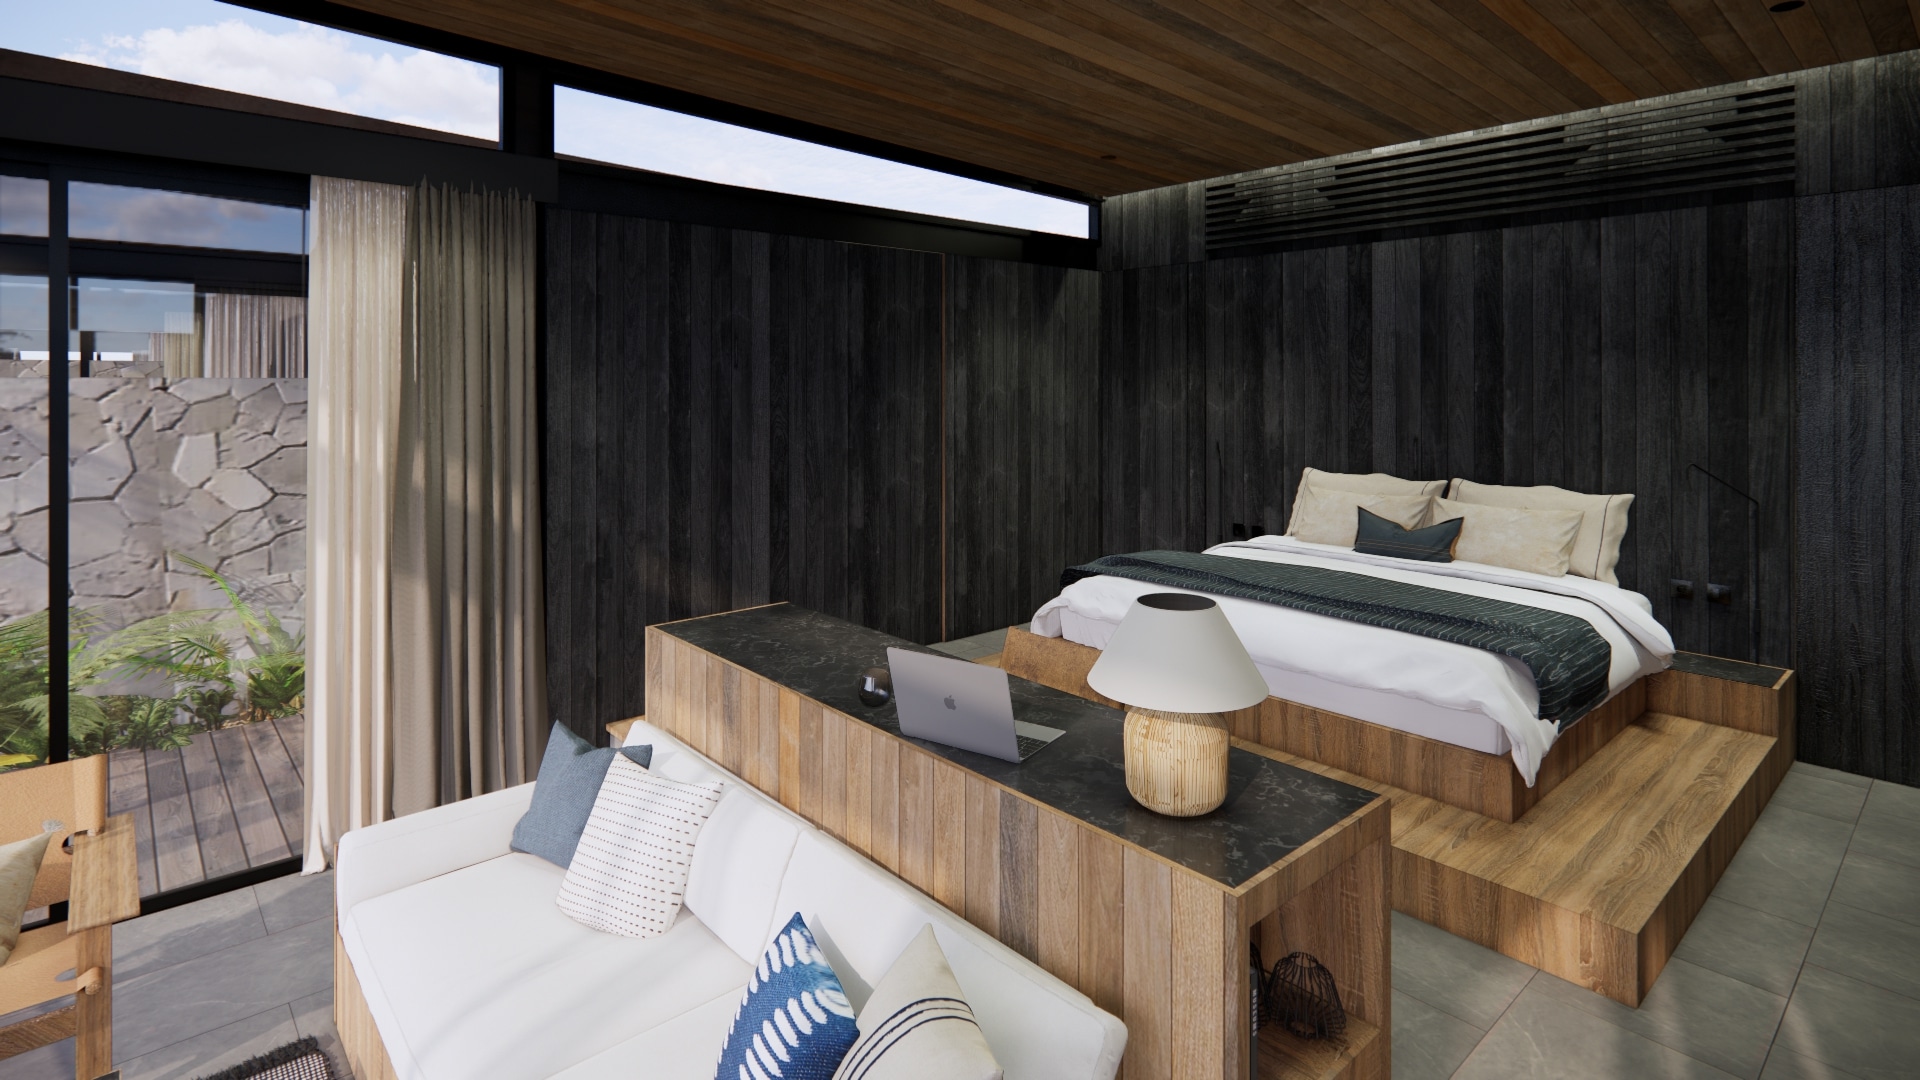 Design Assembly - Bingin Cabins - Bali Architect - Interior Design - Bali Villa - Bedroom